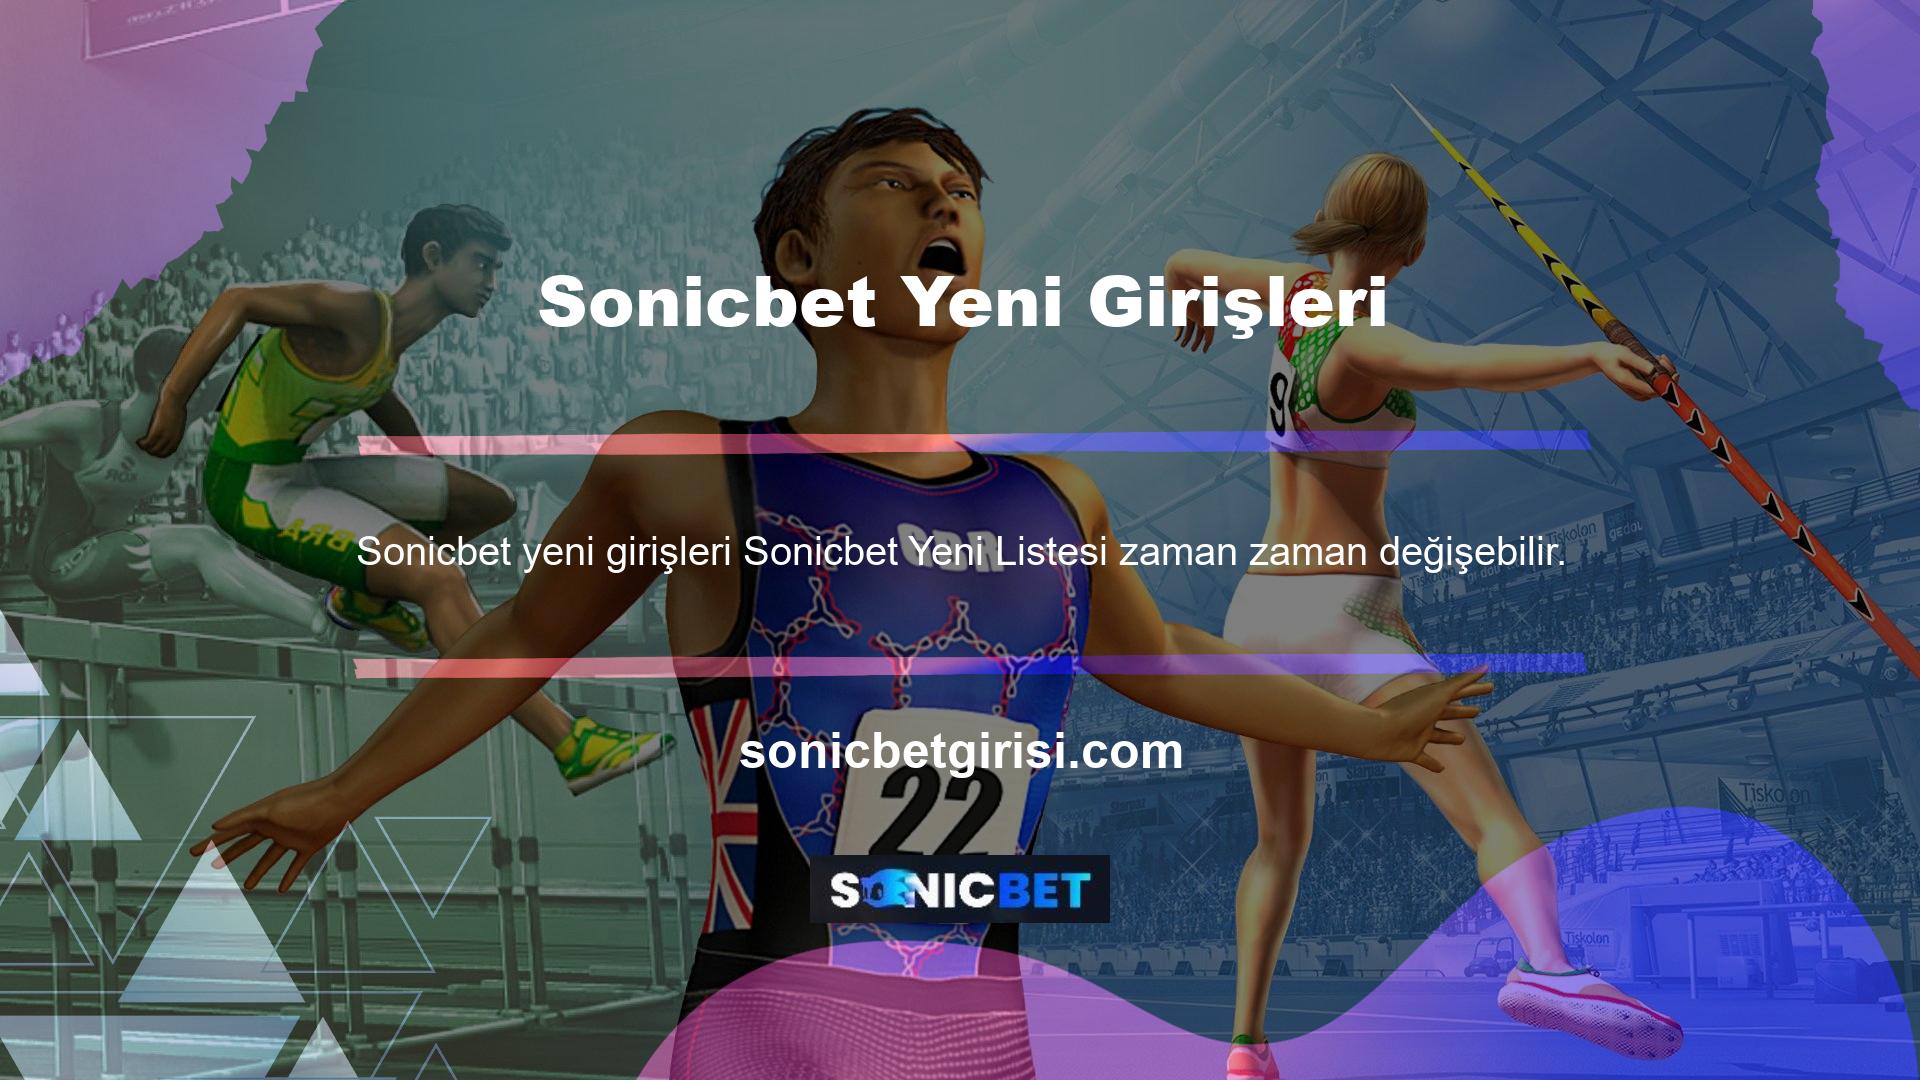 Sonicbet gibi yabancı oyun sitelerinin Türkiye'de çeşitli yasal nedenlerle yasaklandığını her oyuncu bilir